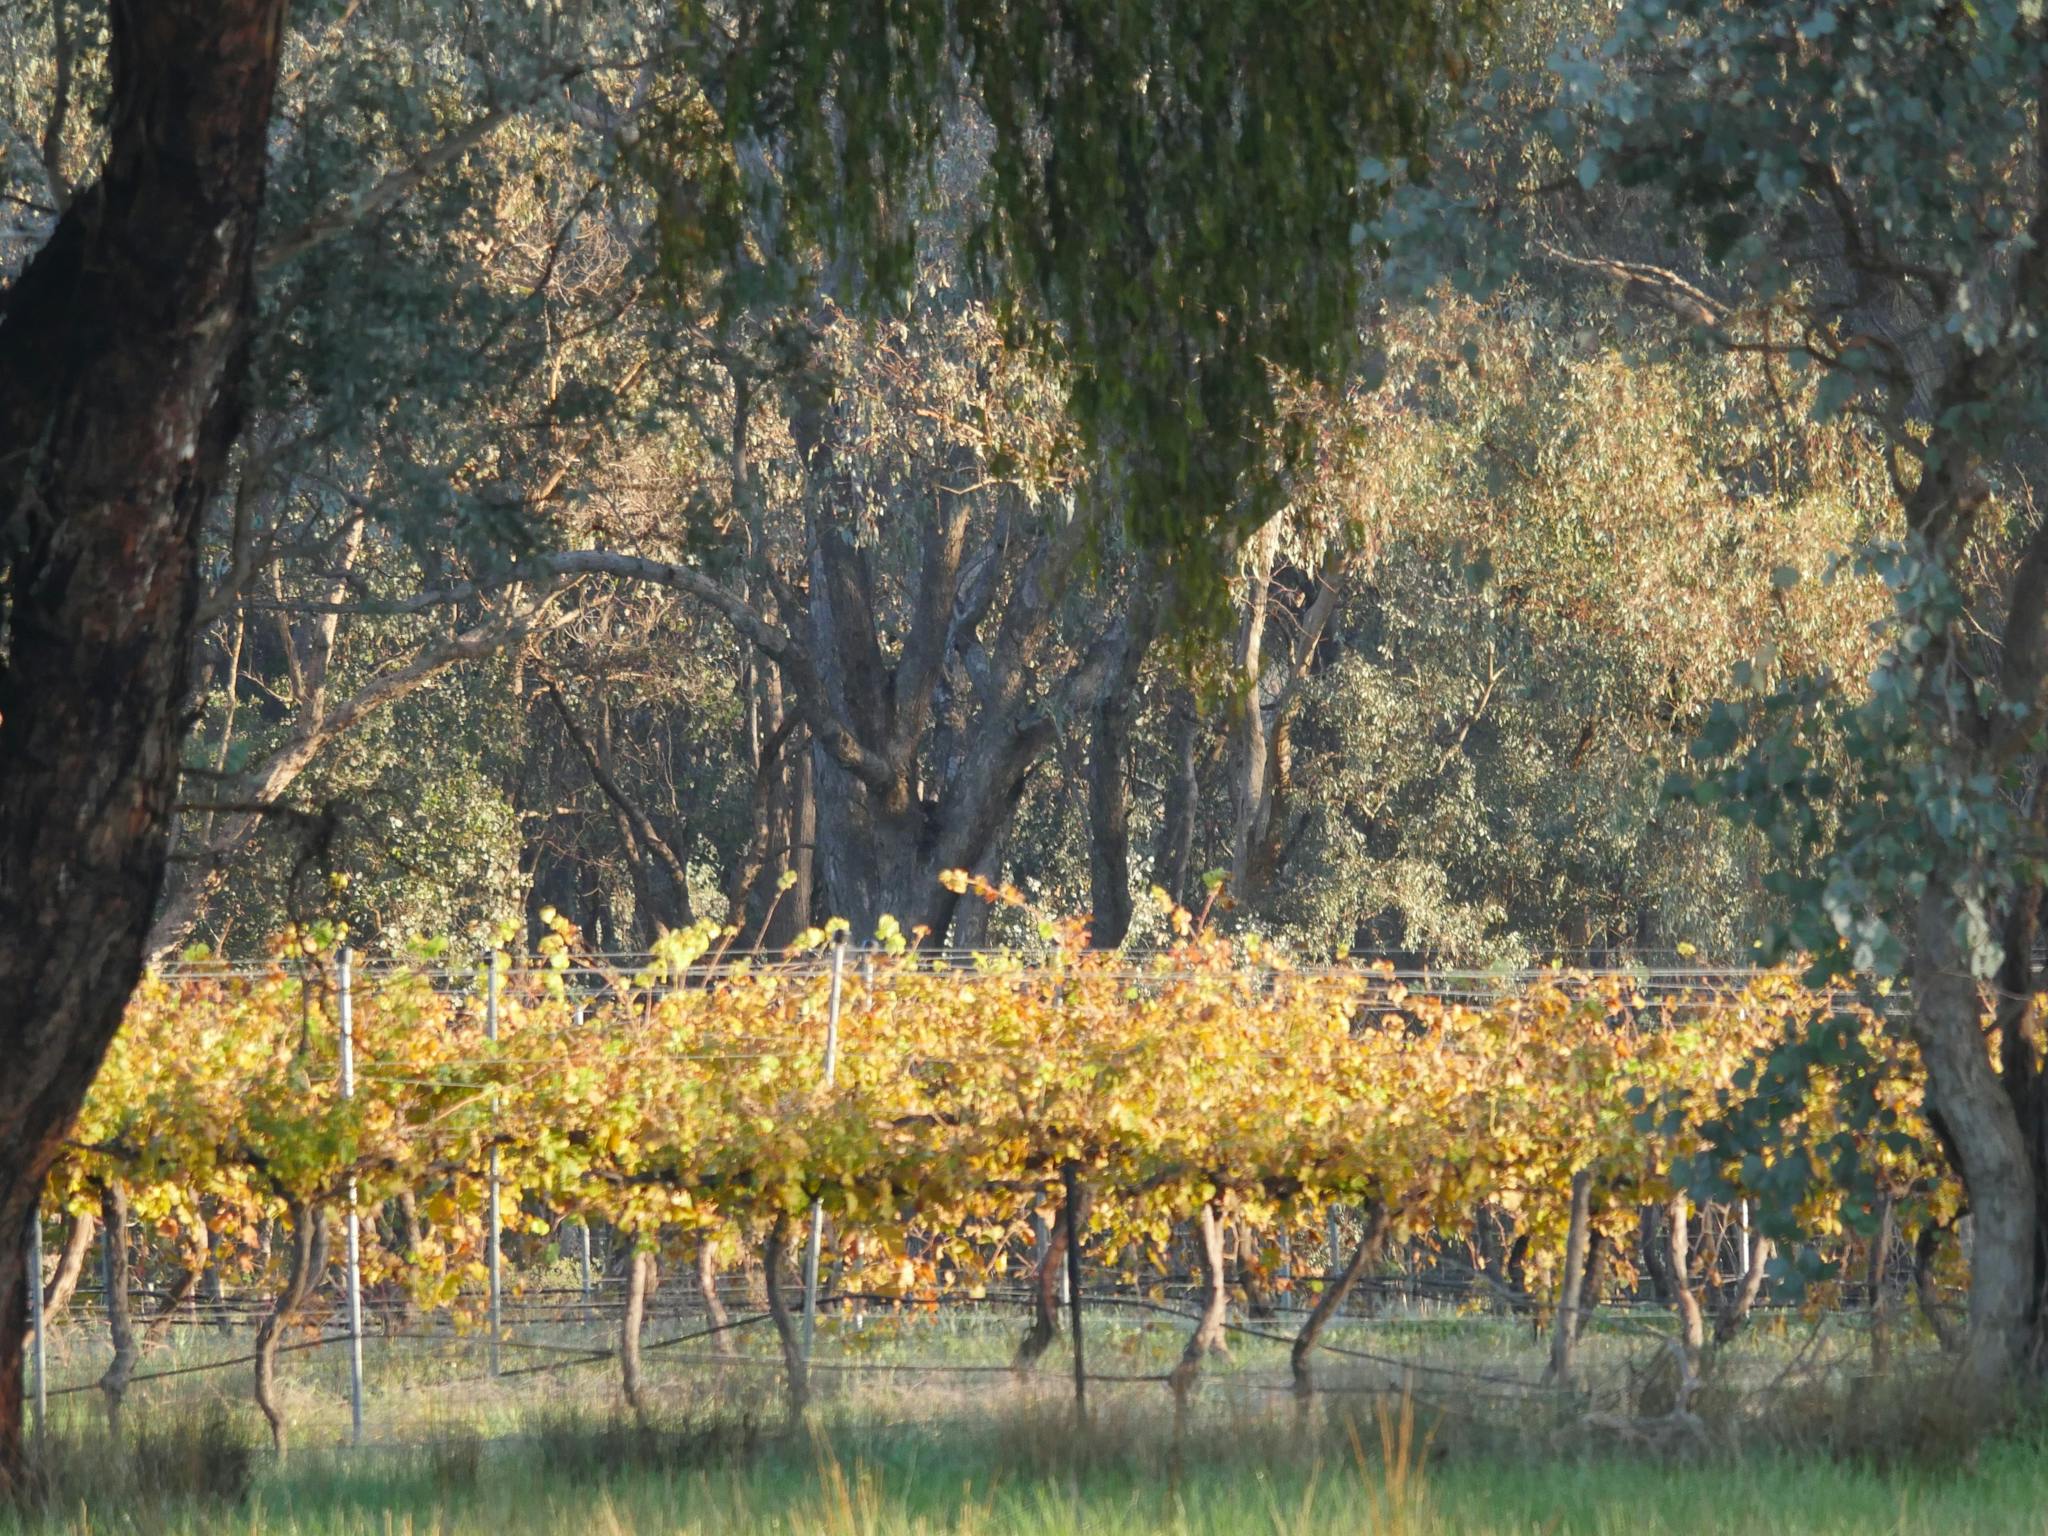 Vineyard vines viewed from behind the retreat